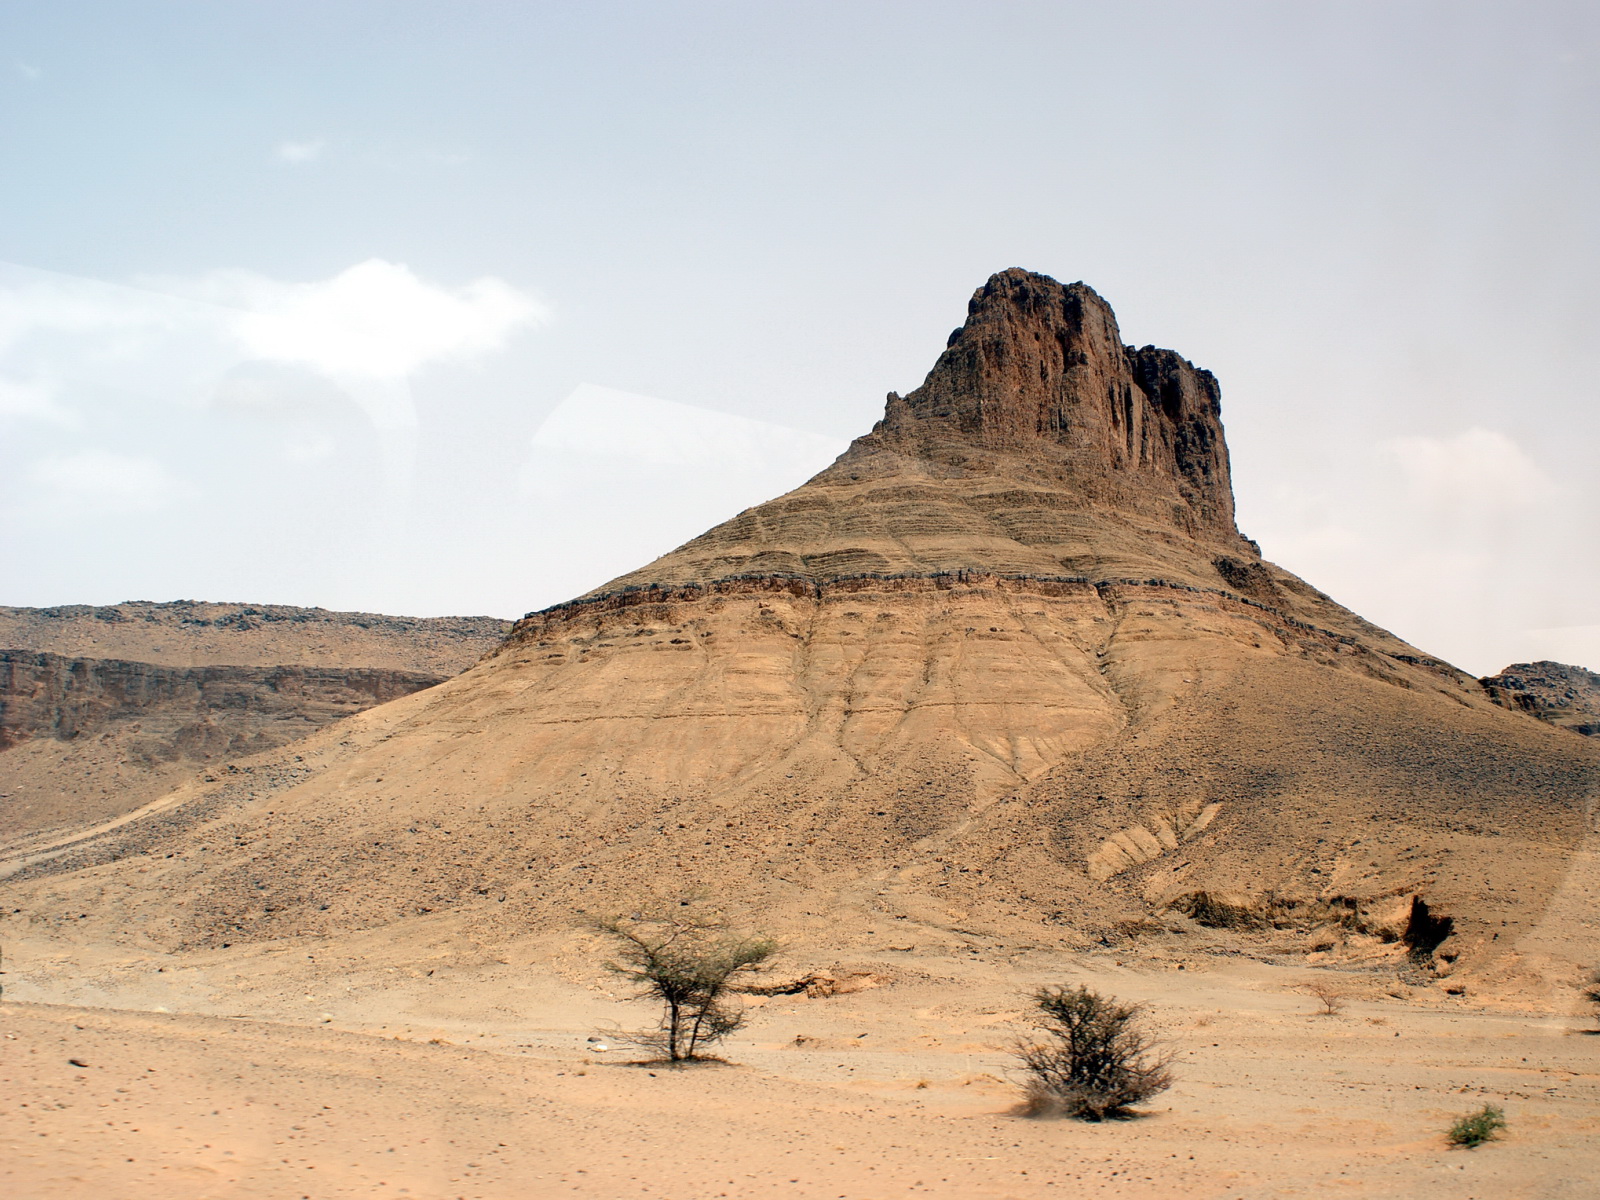 File:Desert Mountain, Morocco (2551258562).jpg - Wikimedia Commons